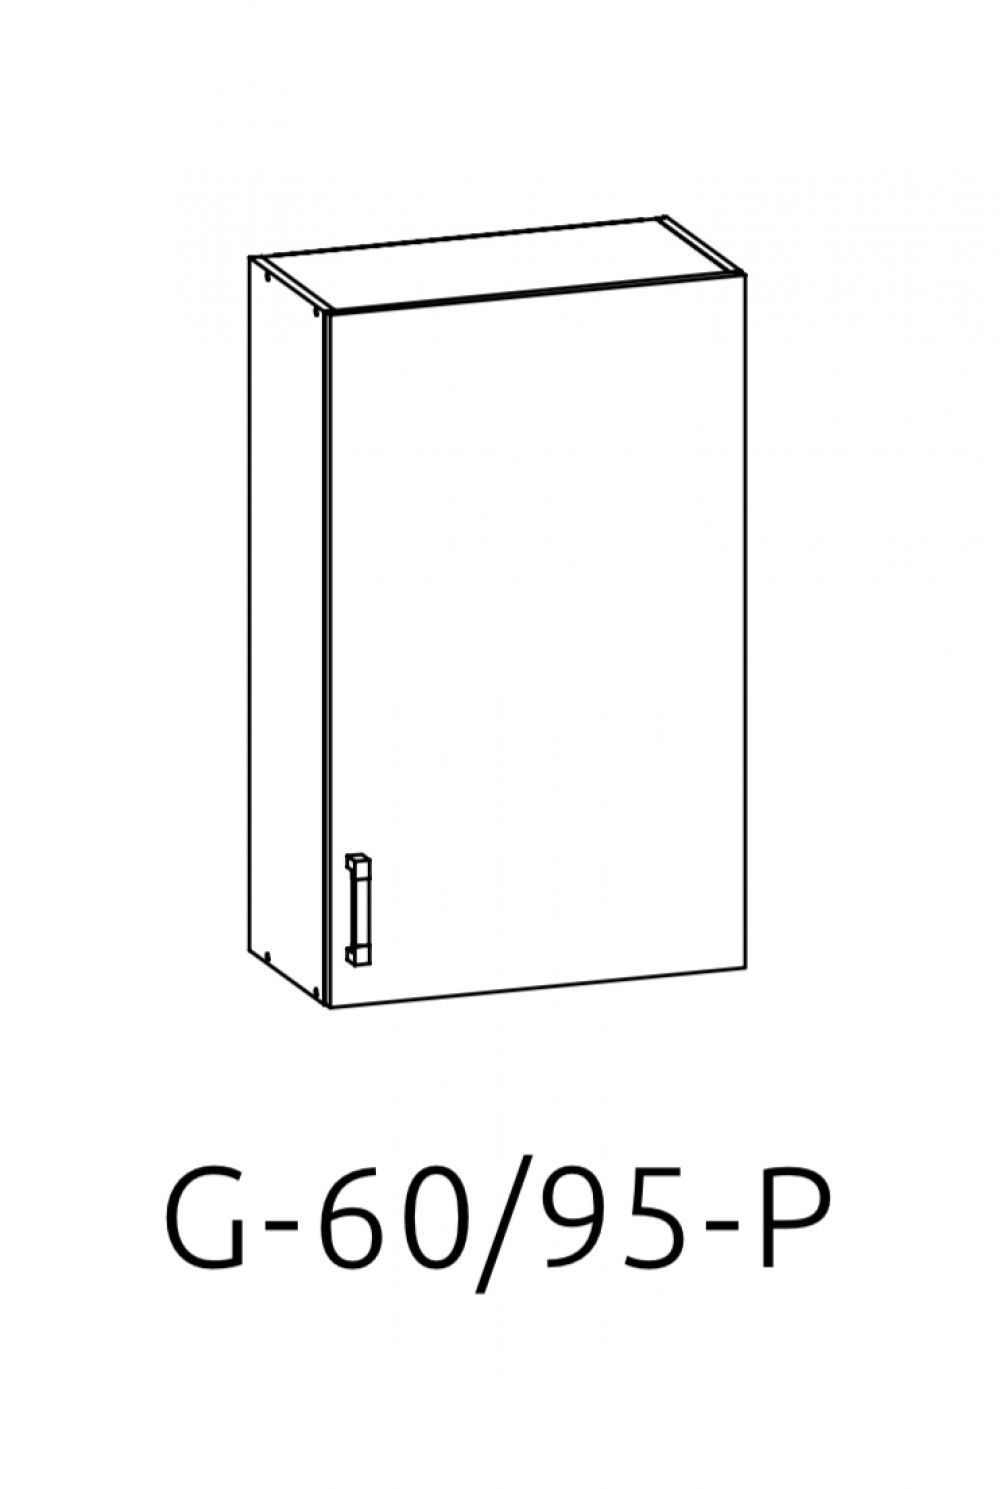 G-60/95 P (L) horní skříňka kuchyně Edan - Nábytek Natali s.r.o.